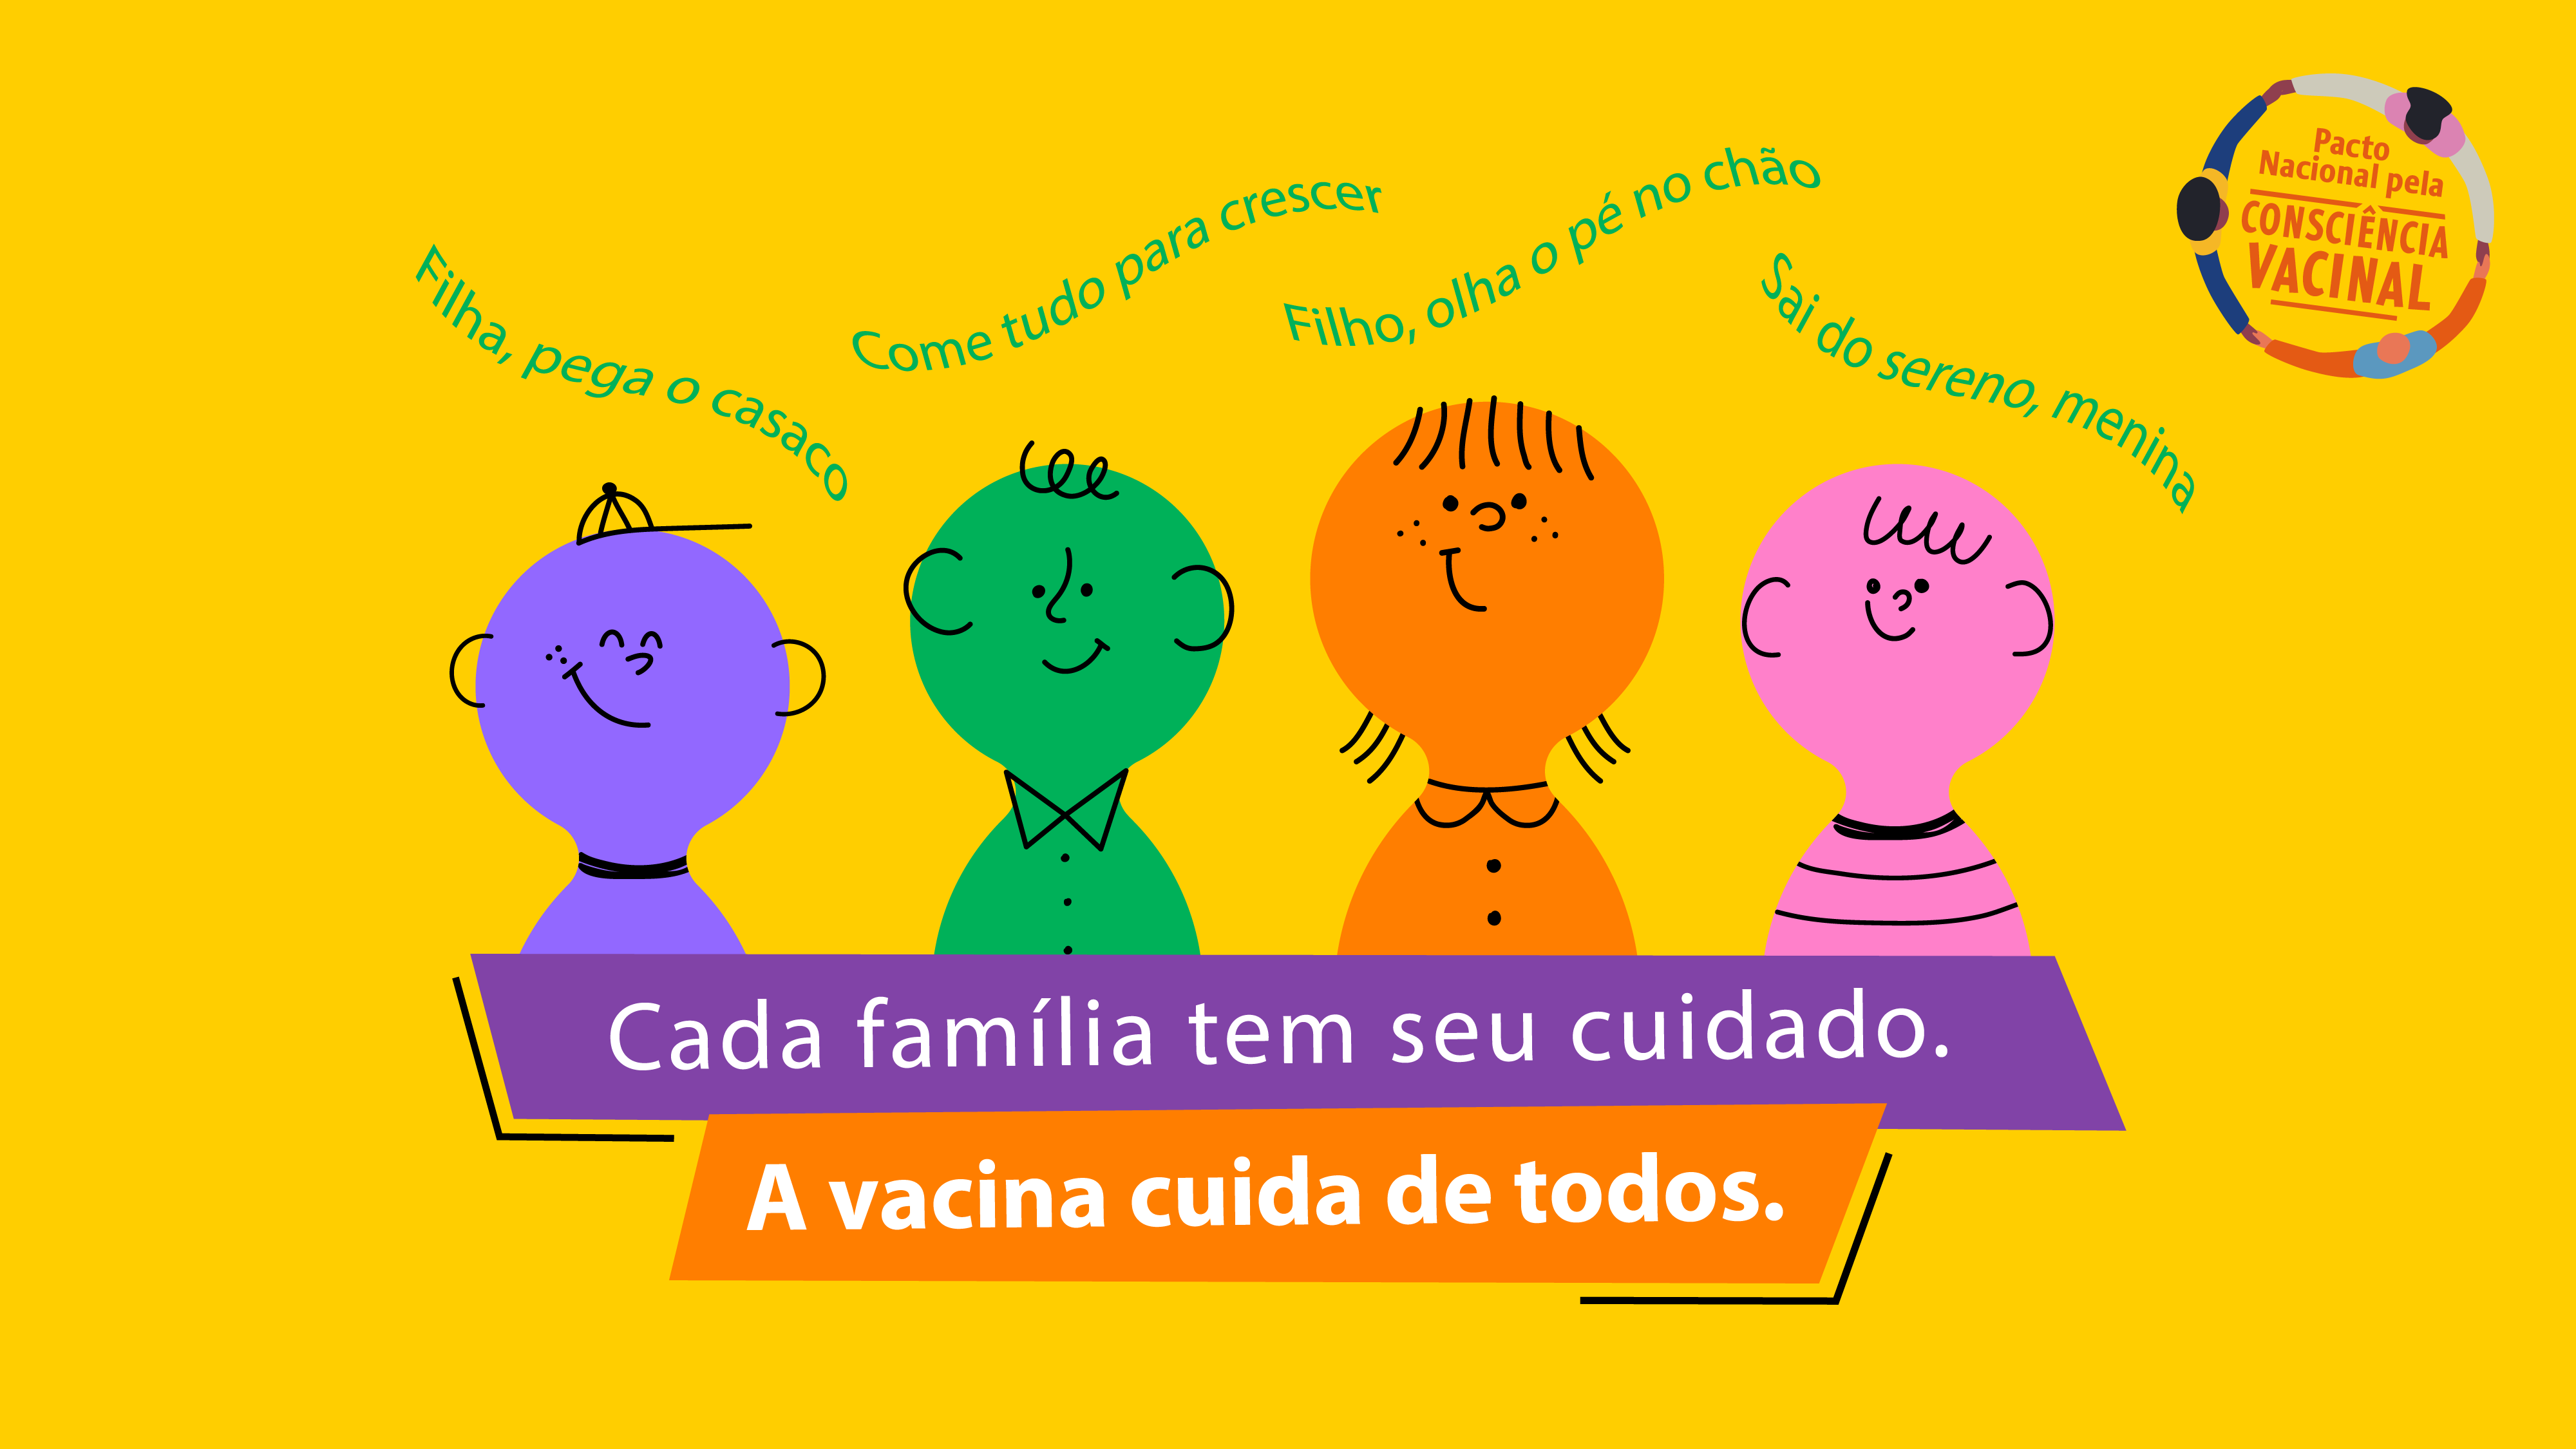 Capa_projecao_-_Campanha_de_Consciência_Vacinal.png - 440,87 kB